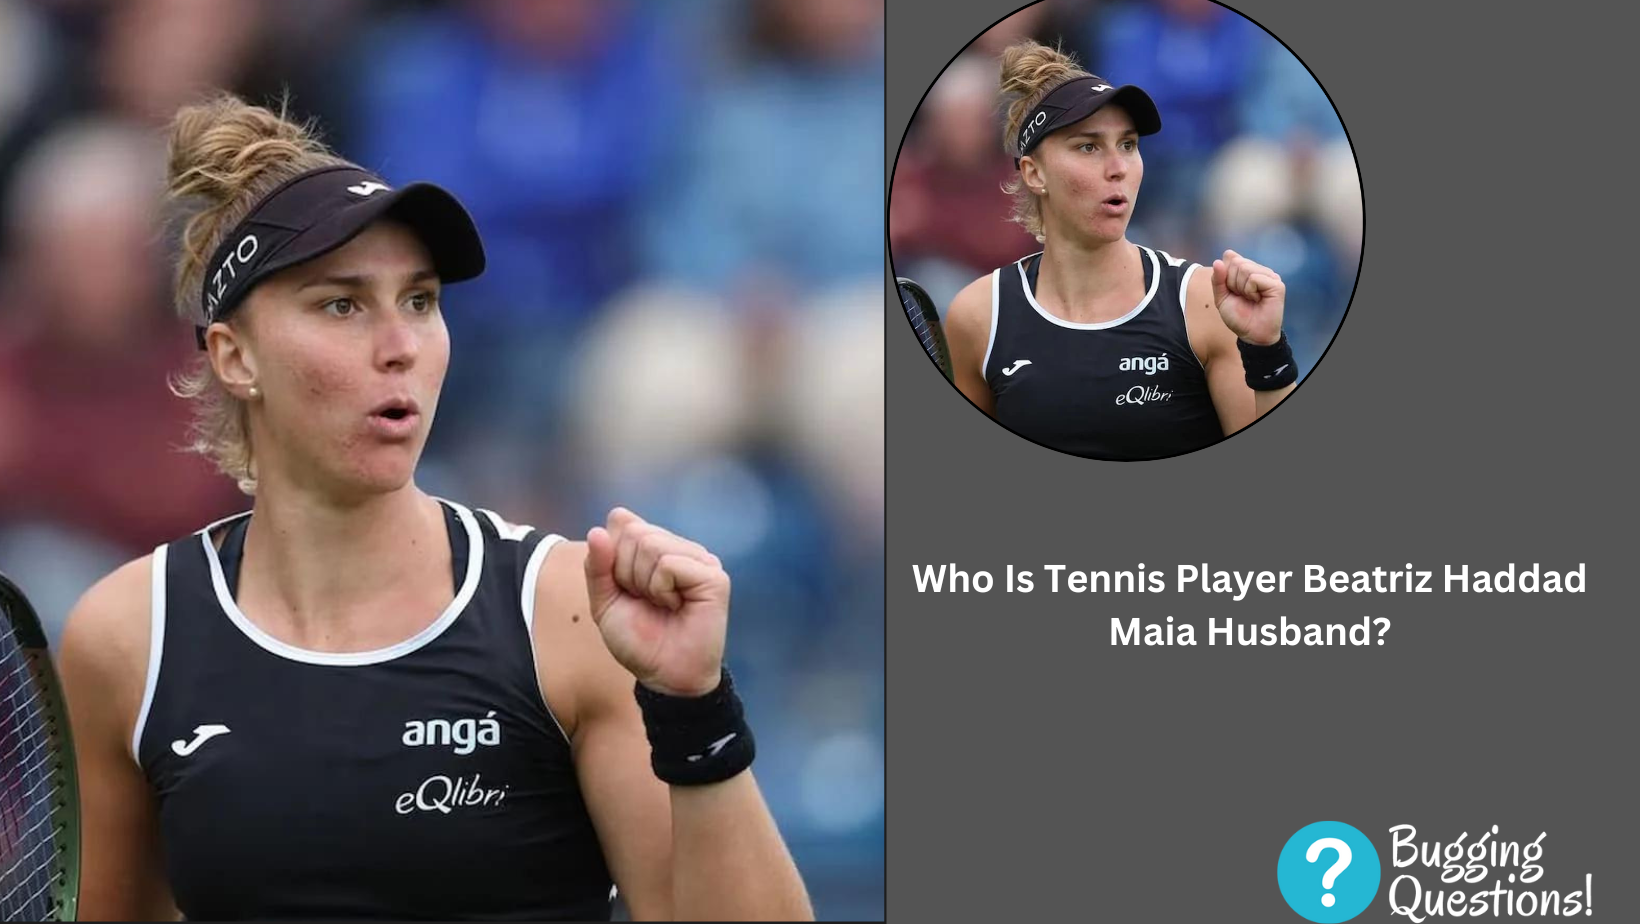 Who Is Tennis Player Beatriz Haddad Maia Husband?